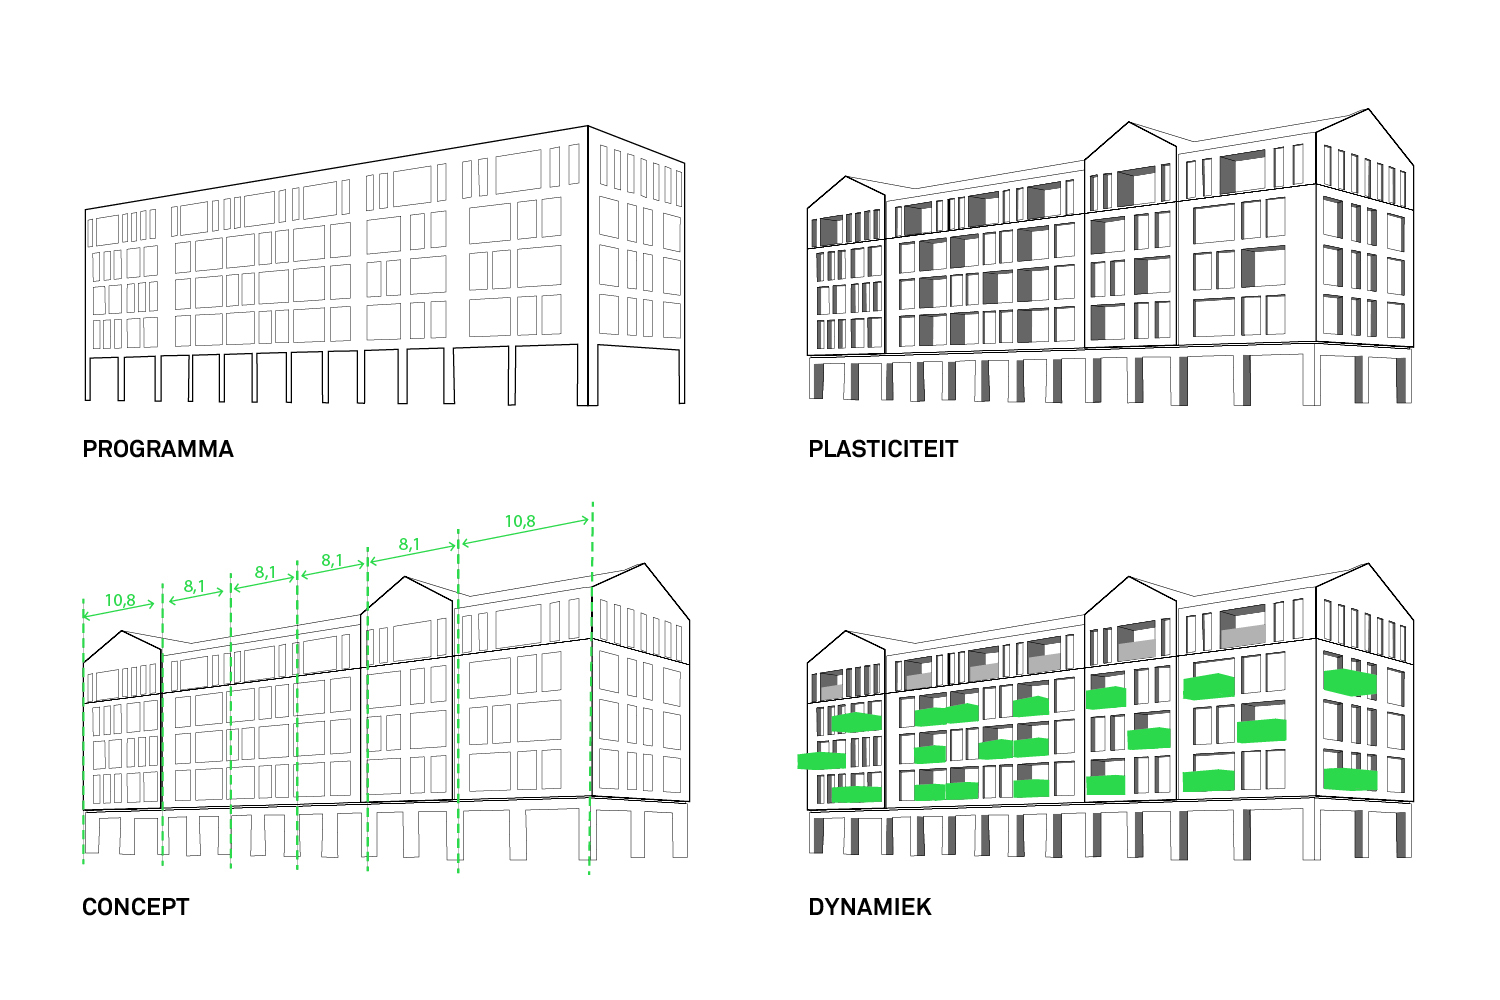 Format Architecten toelichting concept. Baetland Vastgoed realiseert 30 appartementen en commerciële plint in winkelcentrum De Huesmolen in Hoorn.